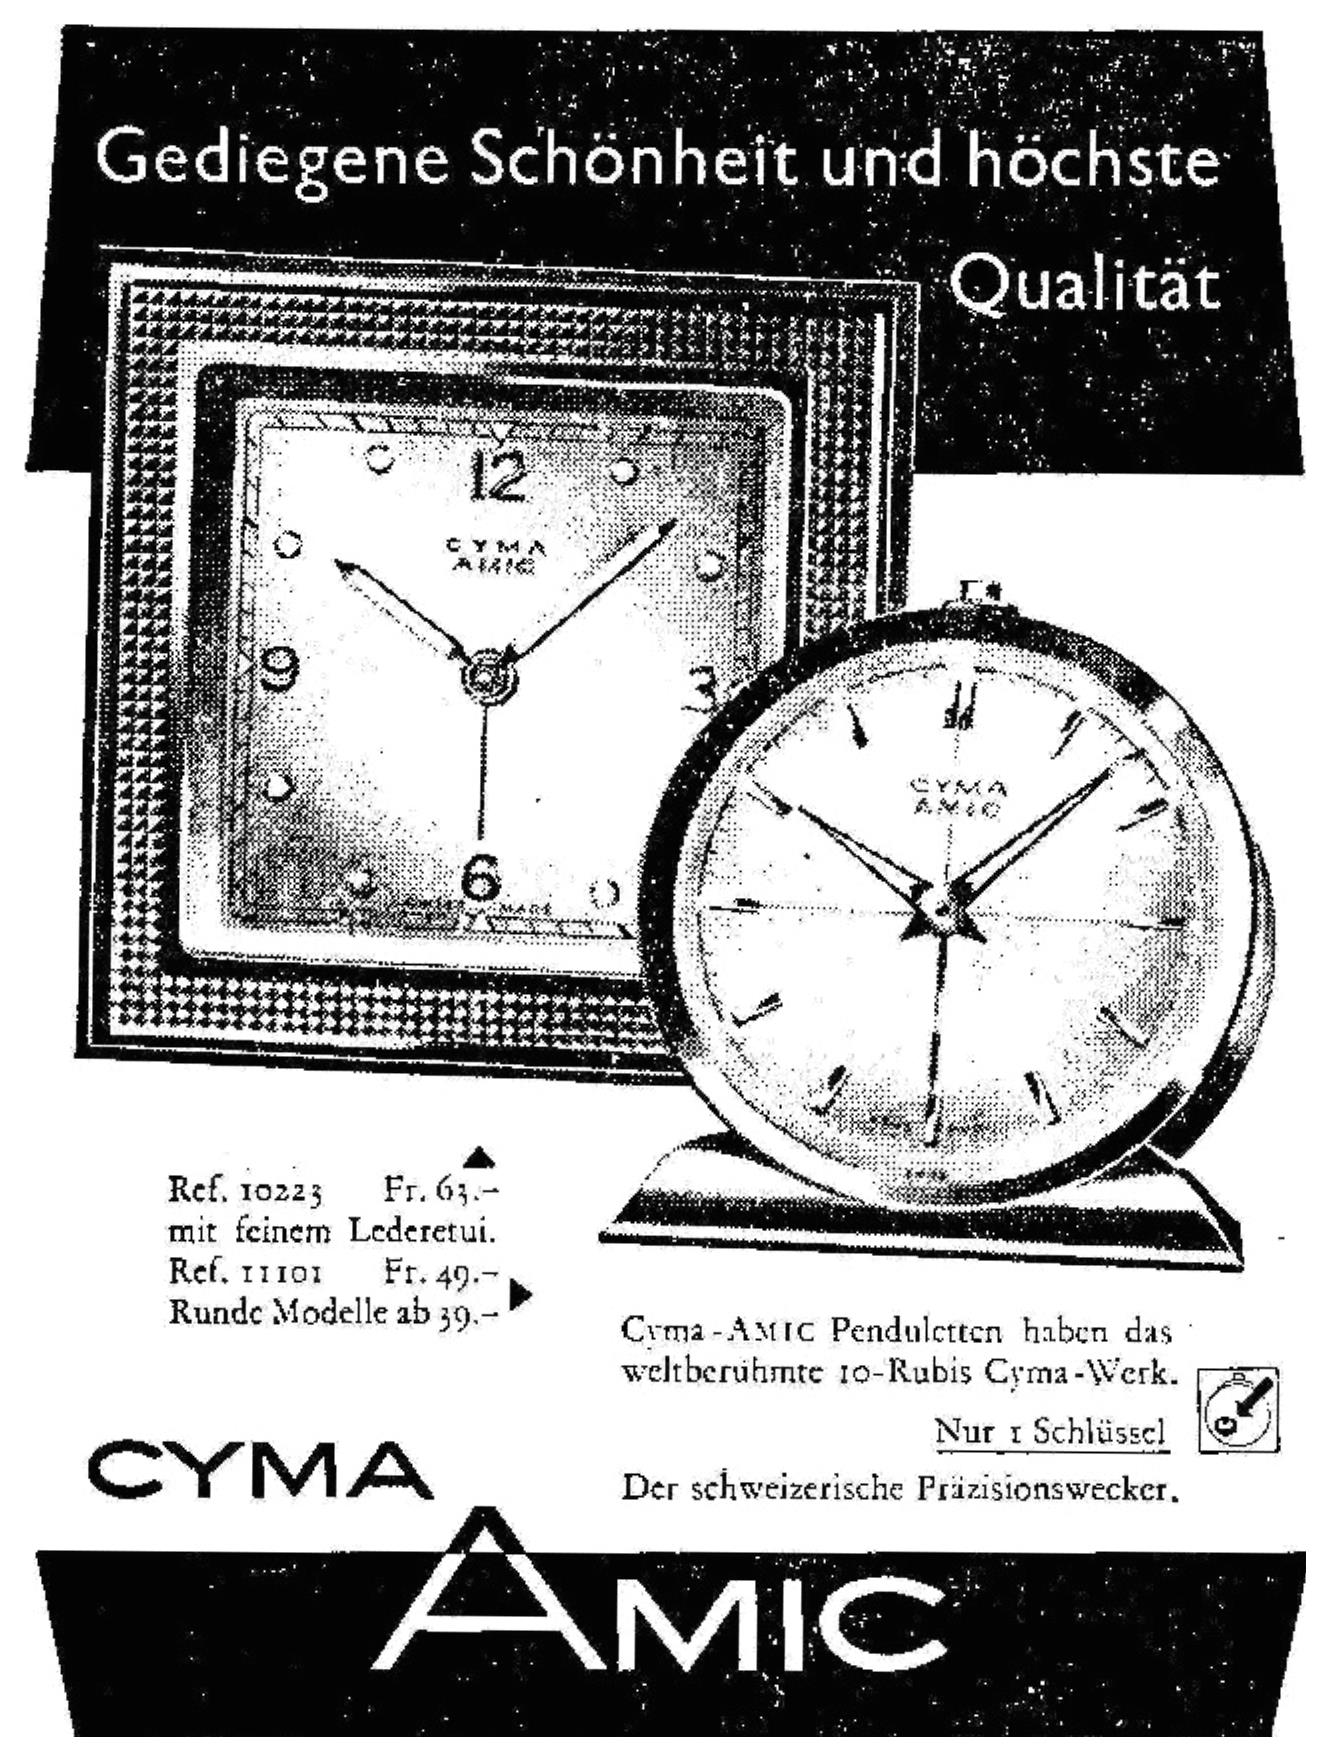 Cyma 1954 5.jpg